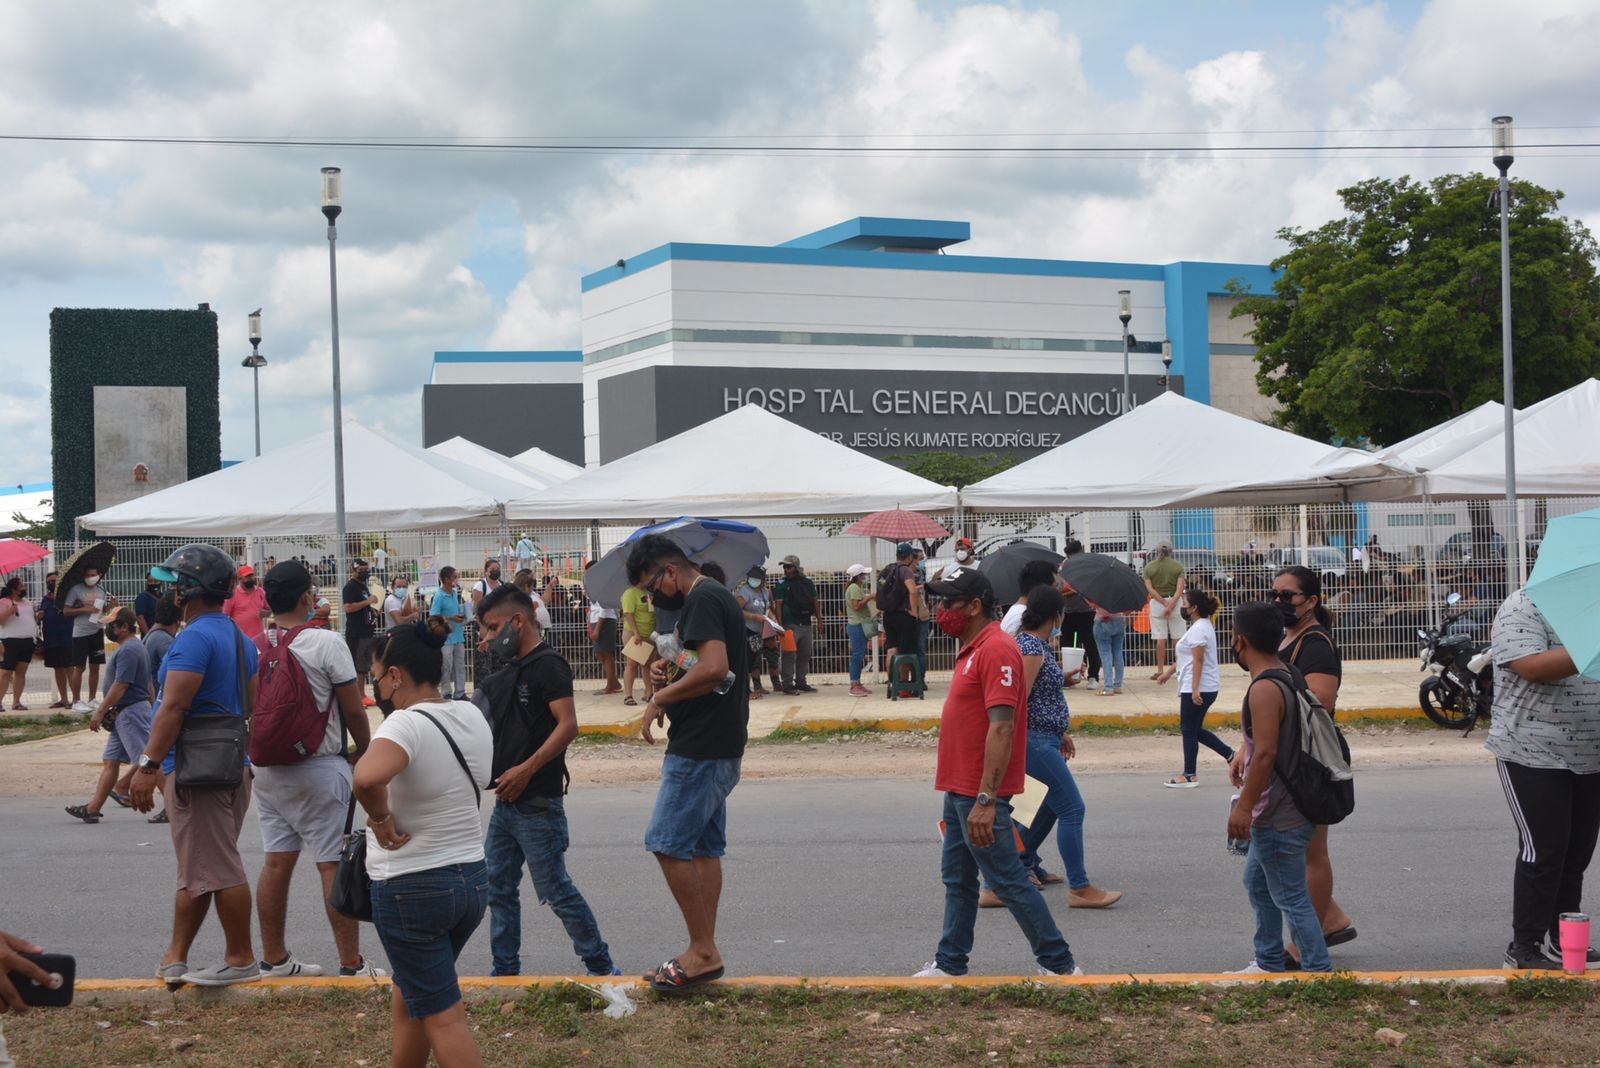 Ciudadanos se pelean por vacunas anticovid en el Hospital General de Cancún: VIDEO